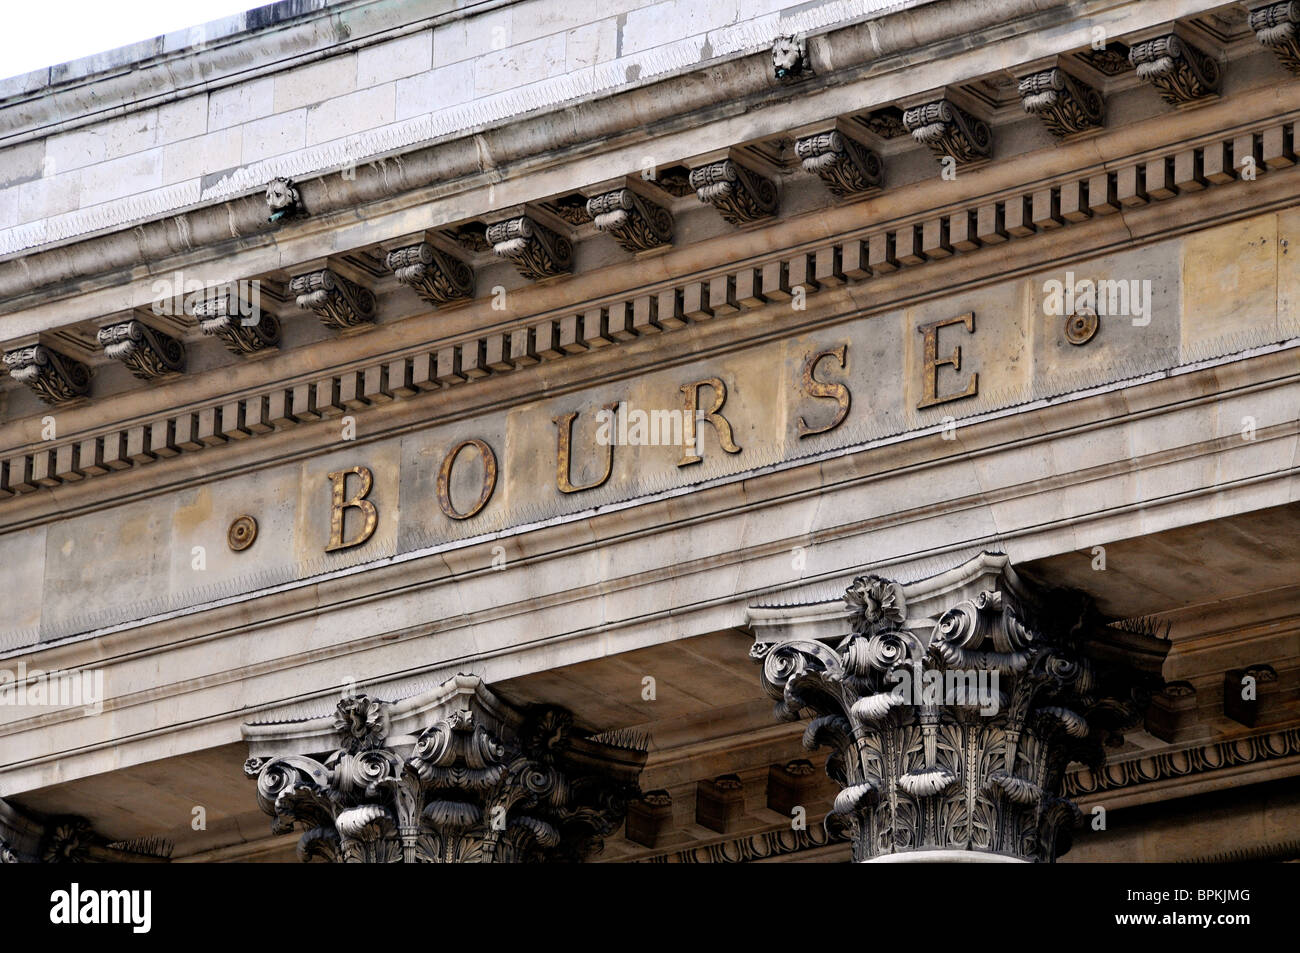 Paris stock exchange, France Stock Photo - Alamy